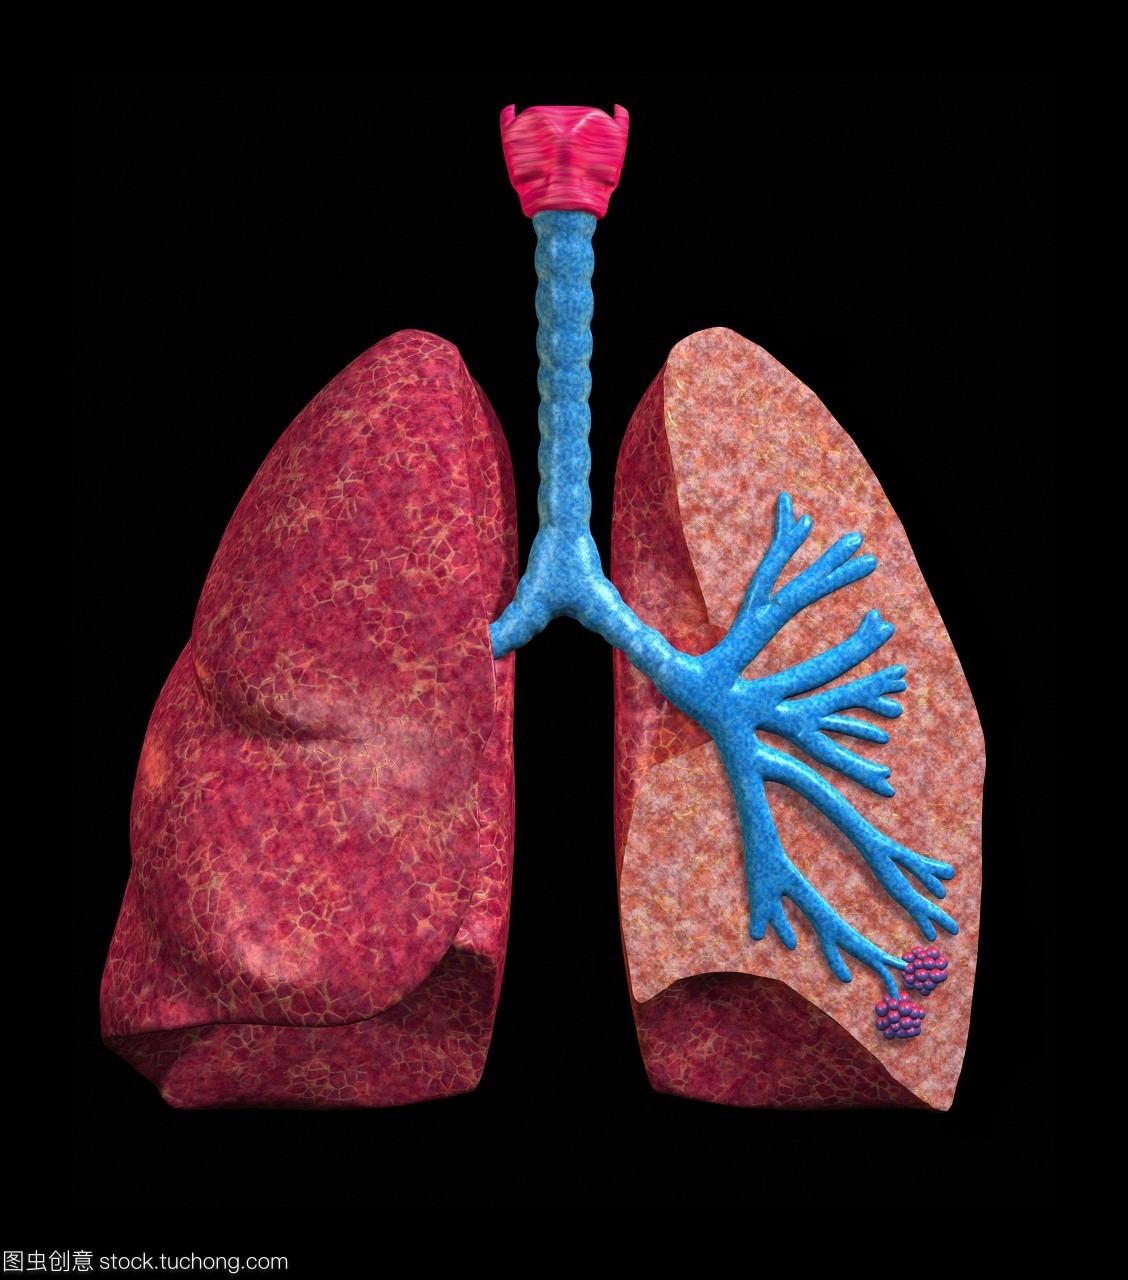 人类的肺。一双人类肺部的电脑绘图其中一个被切掉显示肺的内部结构。肺部气体交换的网站之间的空气和血液。吸入空气通过气管或气管蓝色上中心。顶部的气管是喉喉红色。气管分为两个支气管一个为每一个肺。在肺癌,支气管分裂成更小的航空公司称为细支气管终止于肺泡紫色右下。在这些airsacs氧气扩散进入血液和扩散是呼出二氧化碳。